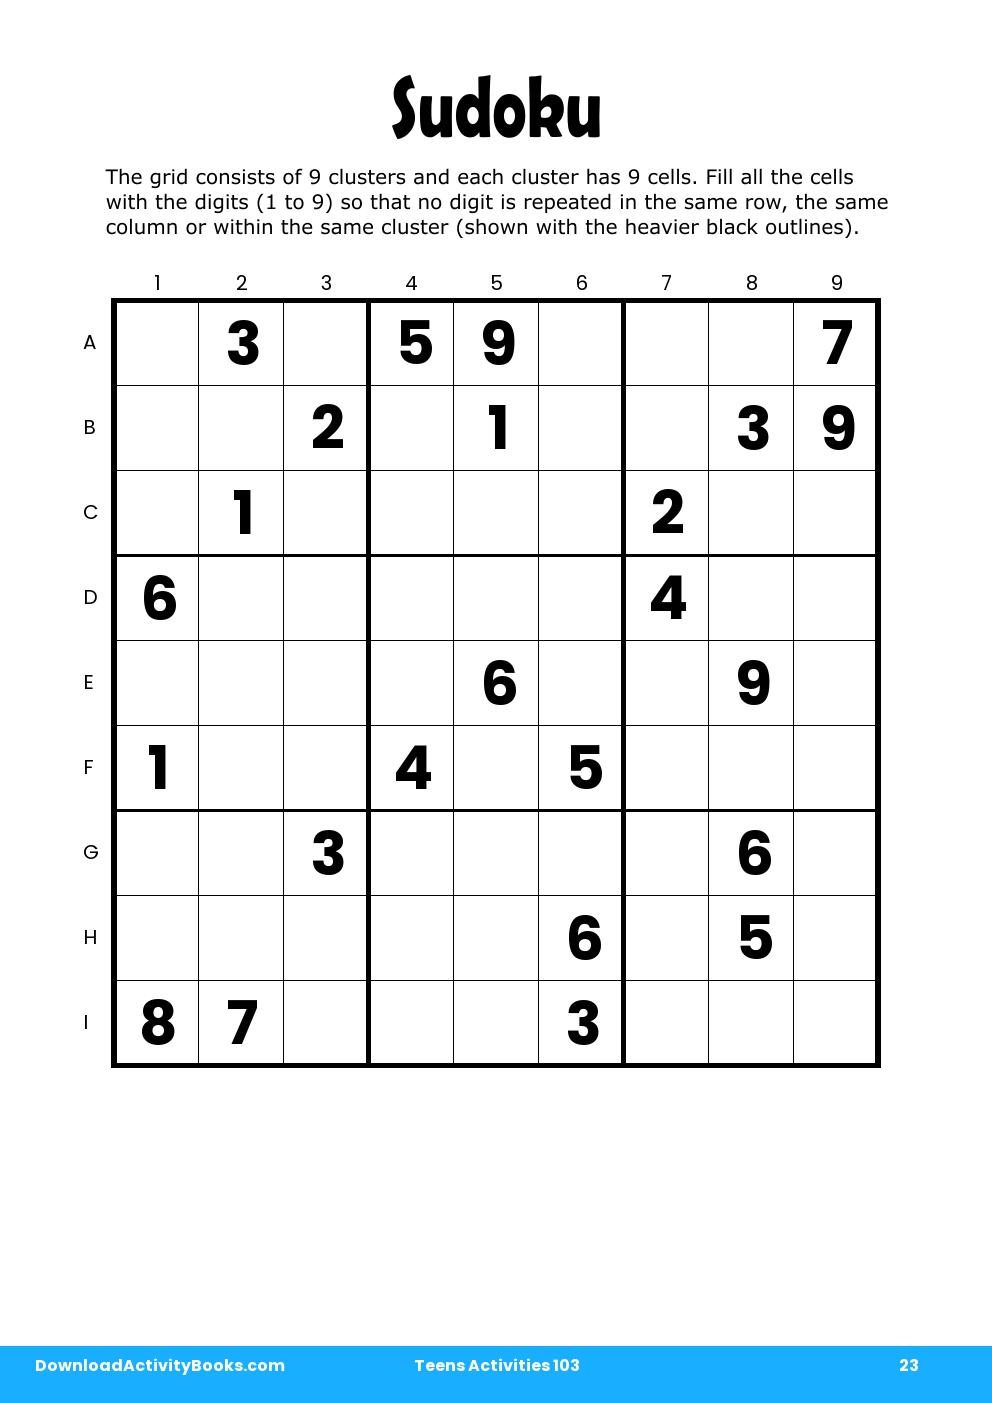 Sudoku in Teens Activities 103